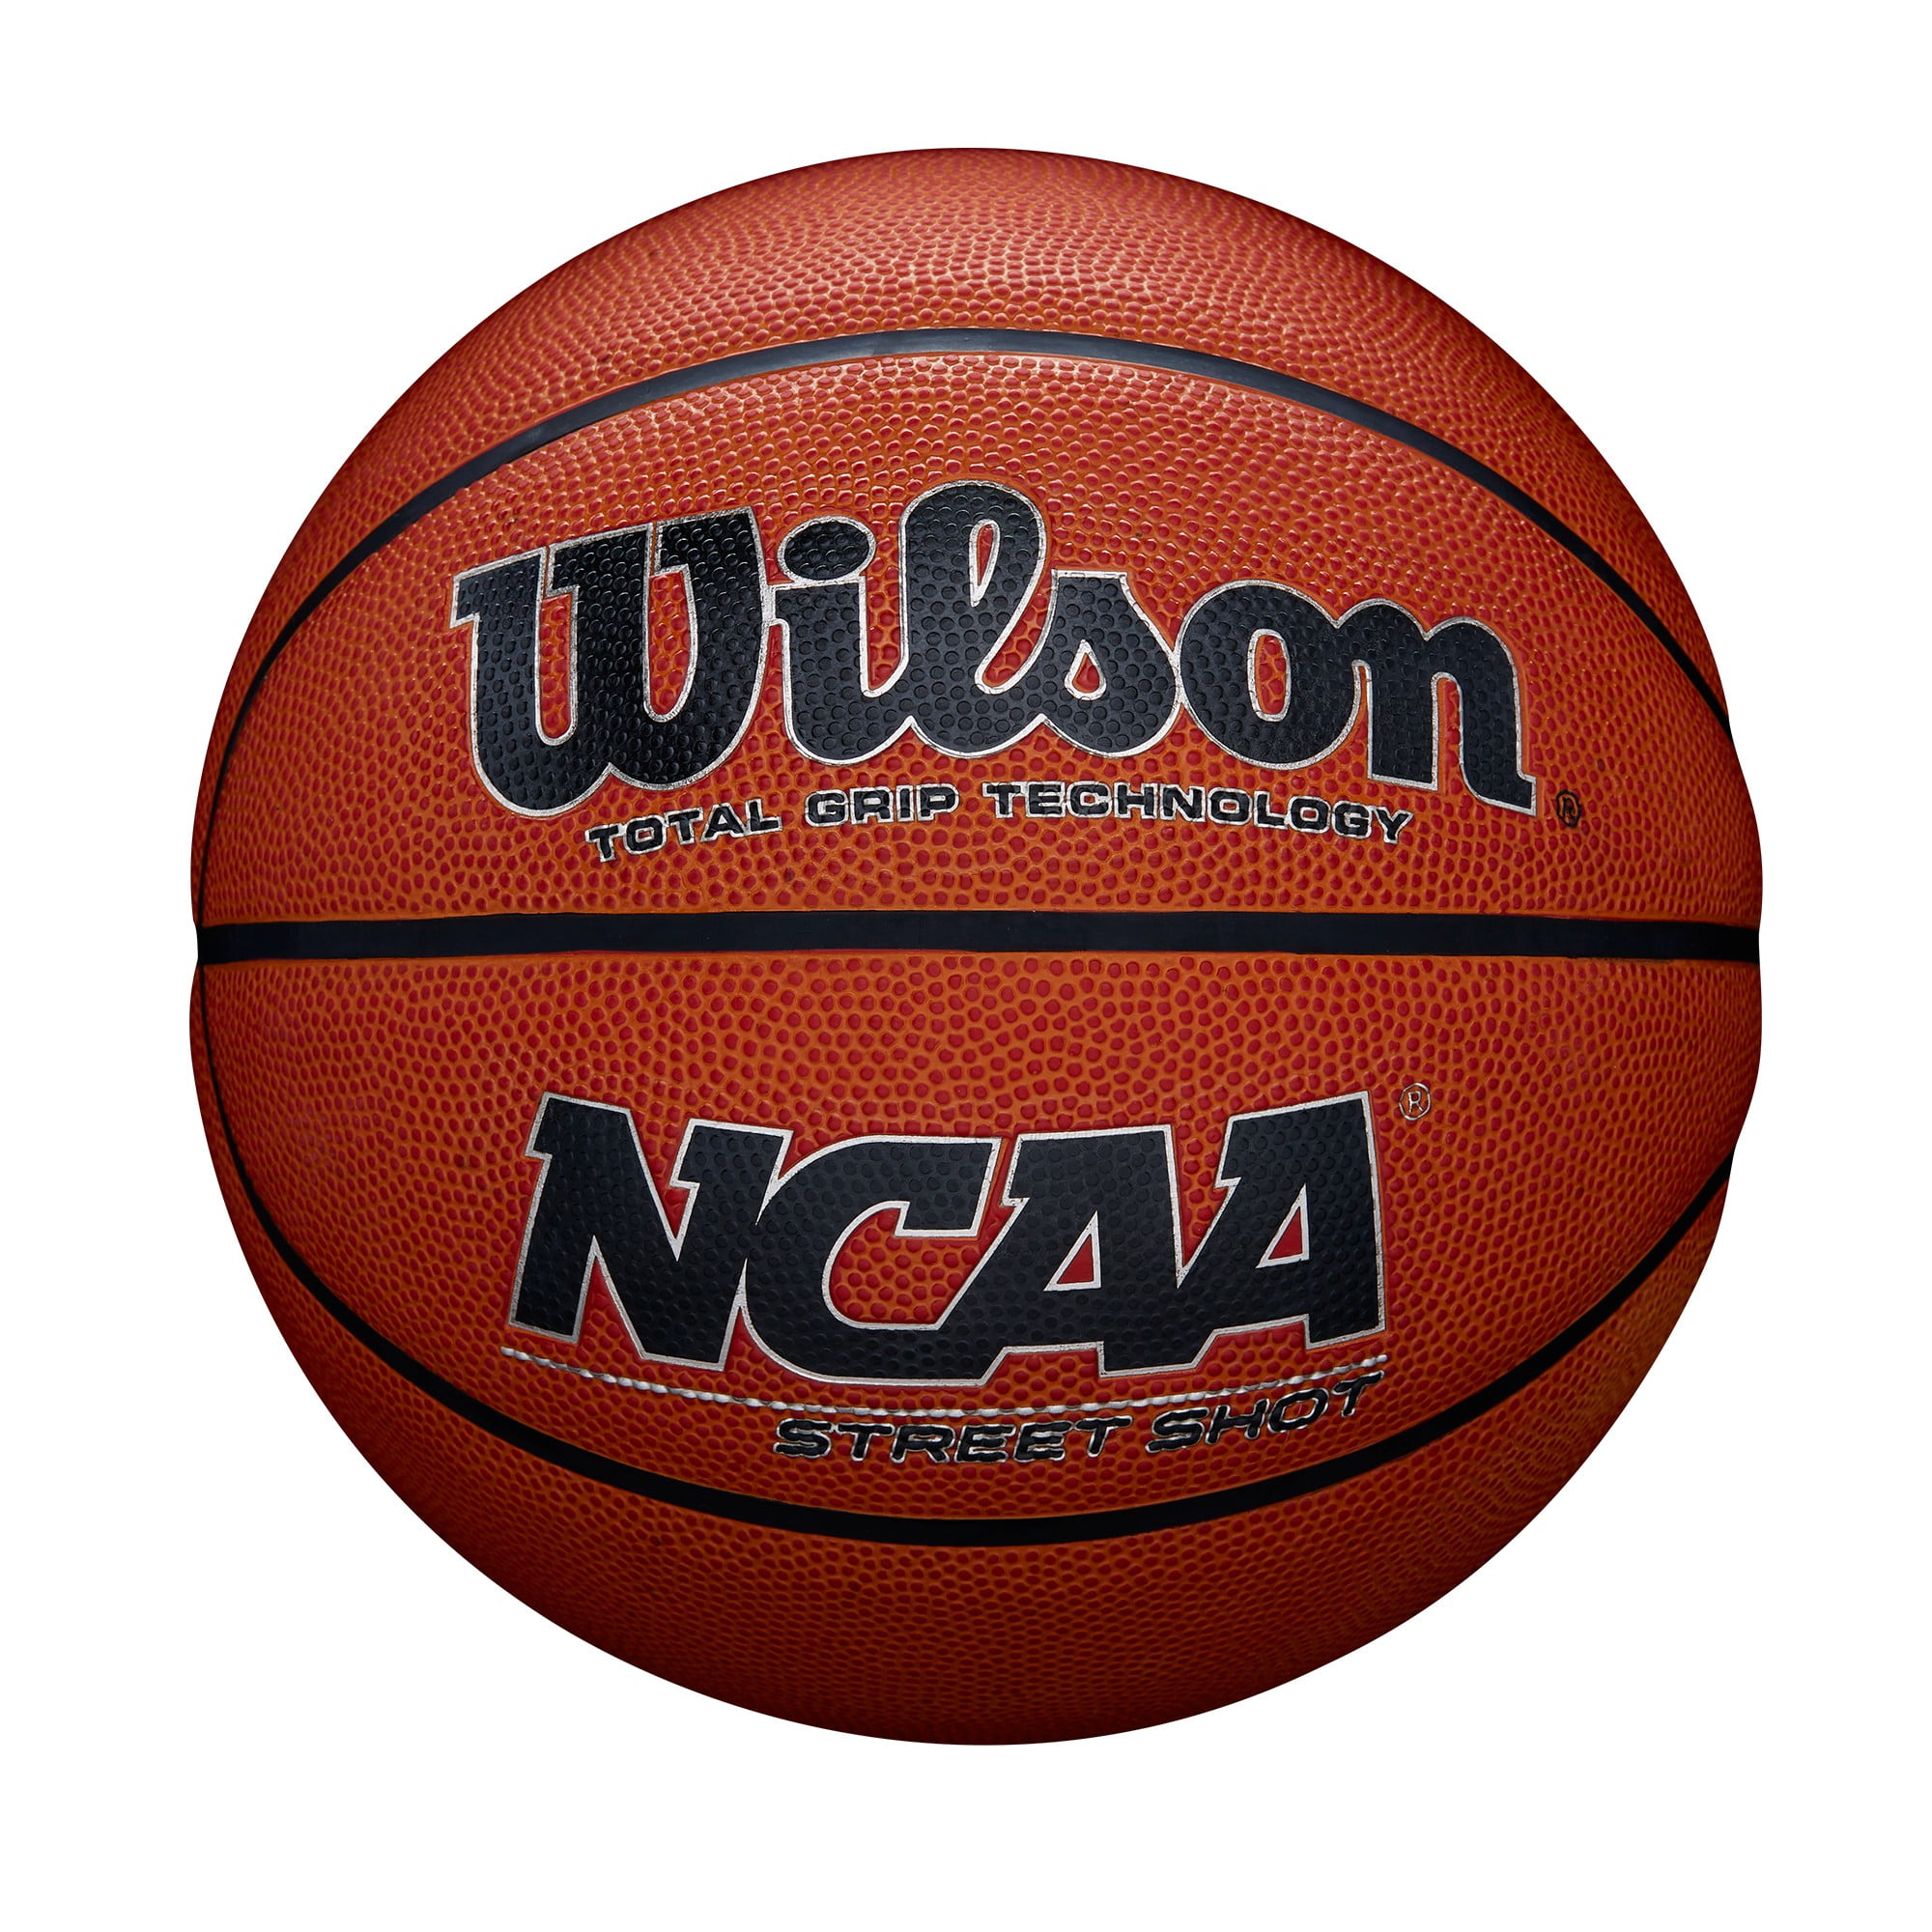 Spalding Hexigrip Never Flat Basketball Soft Grip 73-792E 29.5 Inch Outdoor Ball 